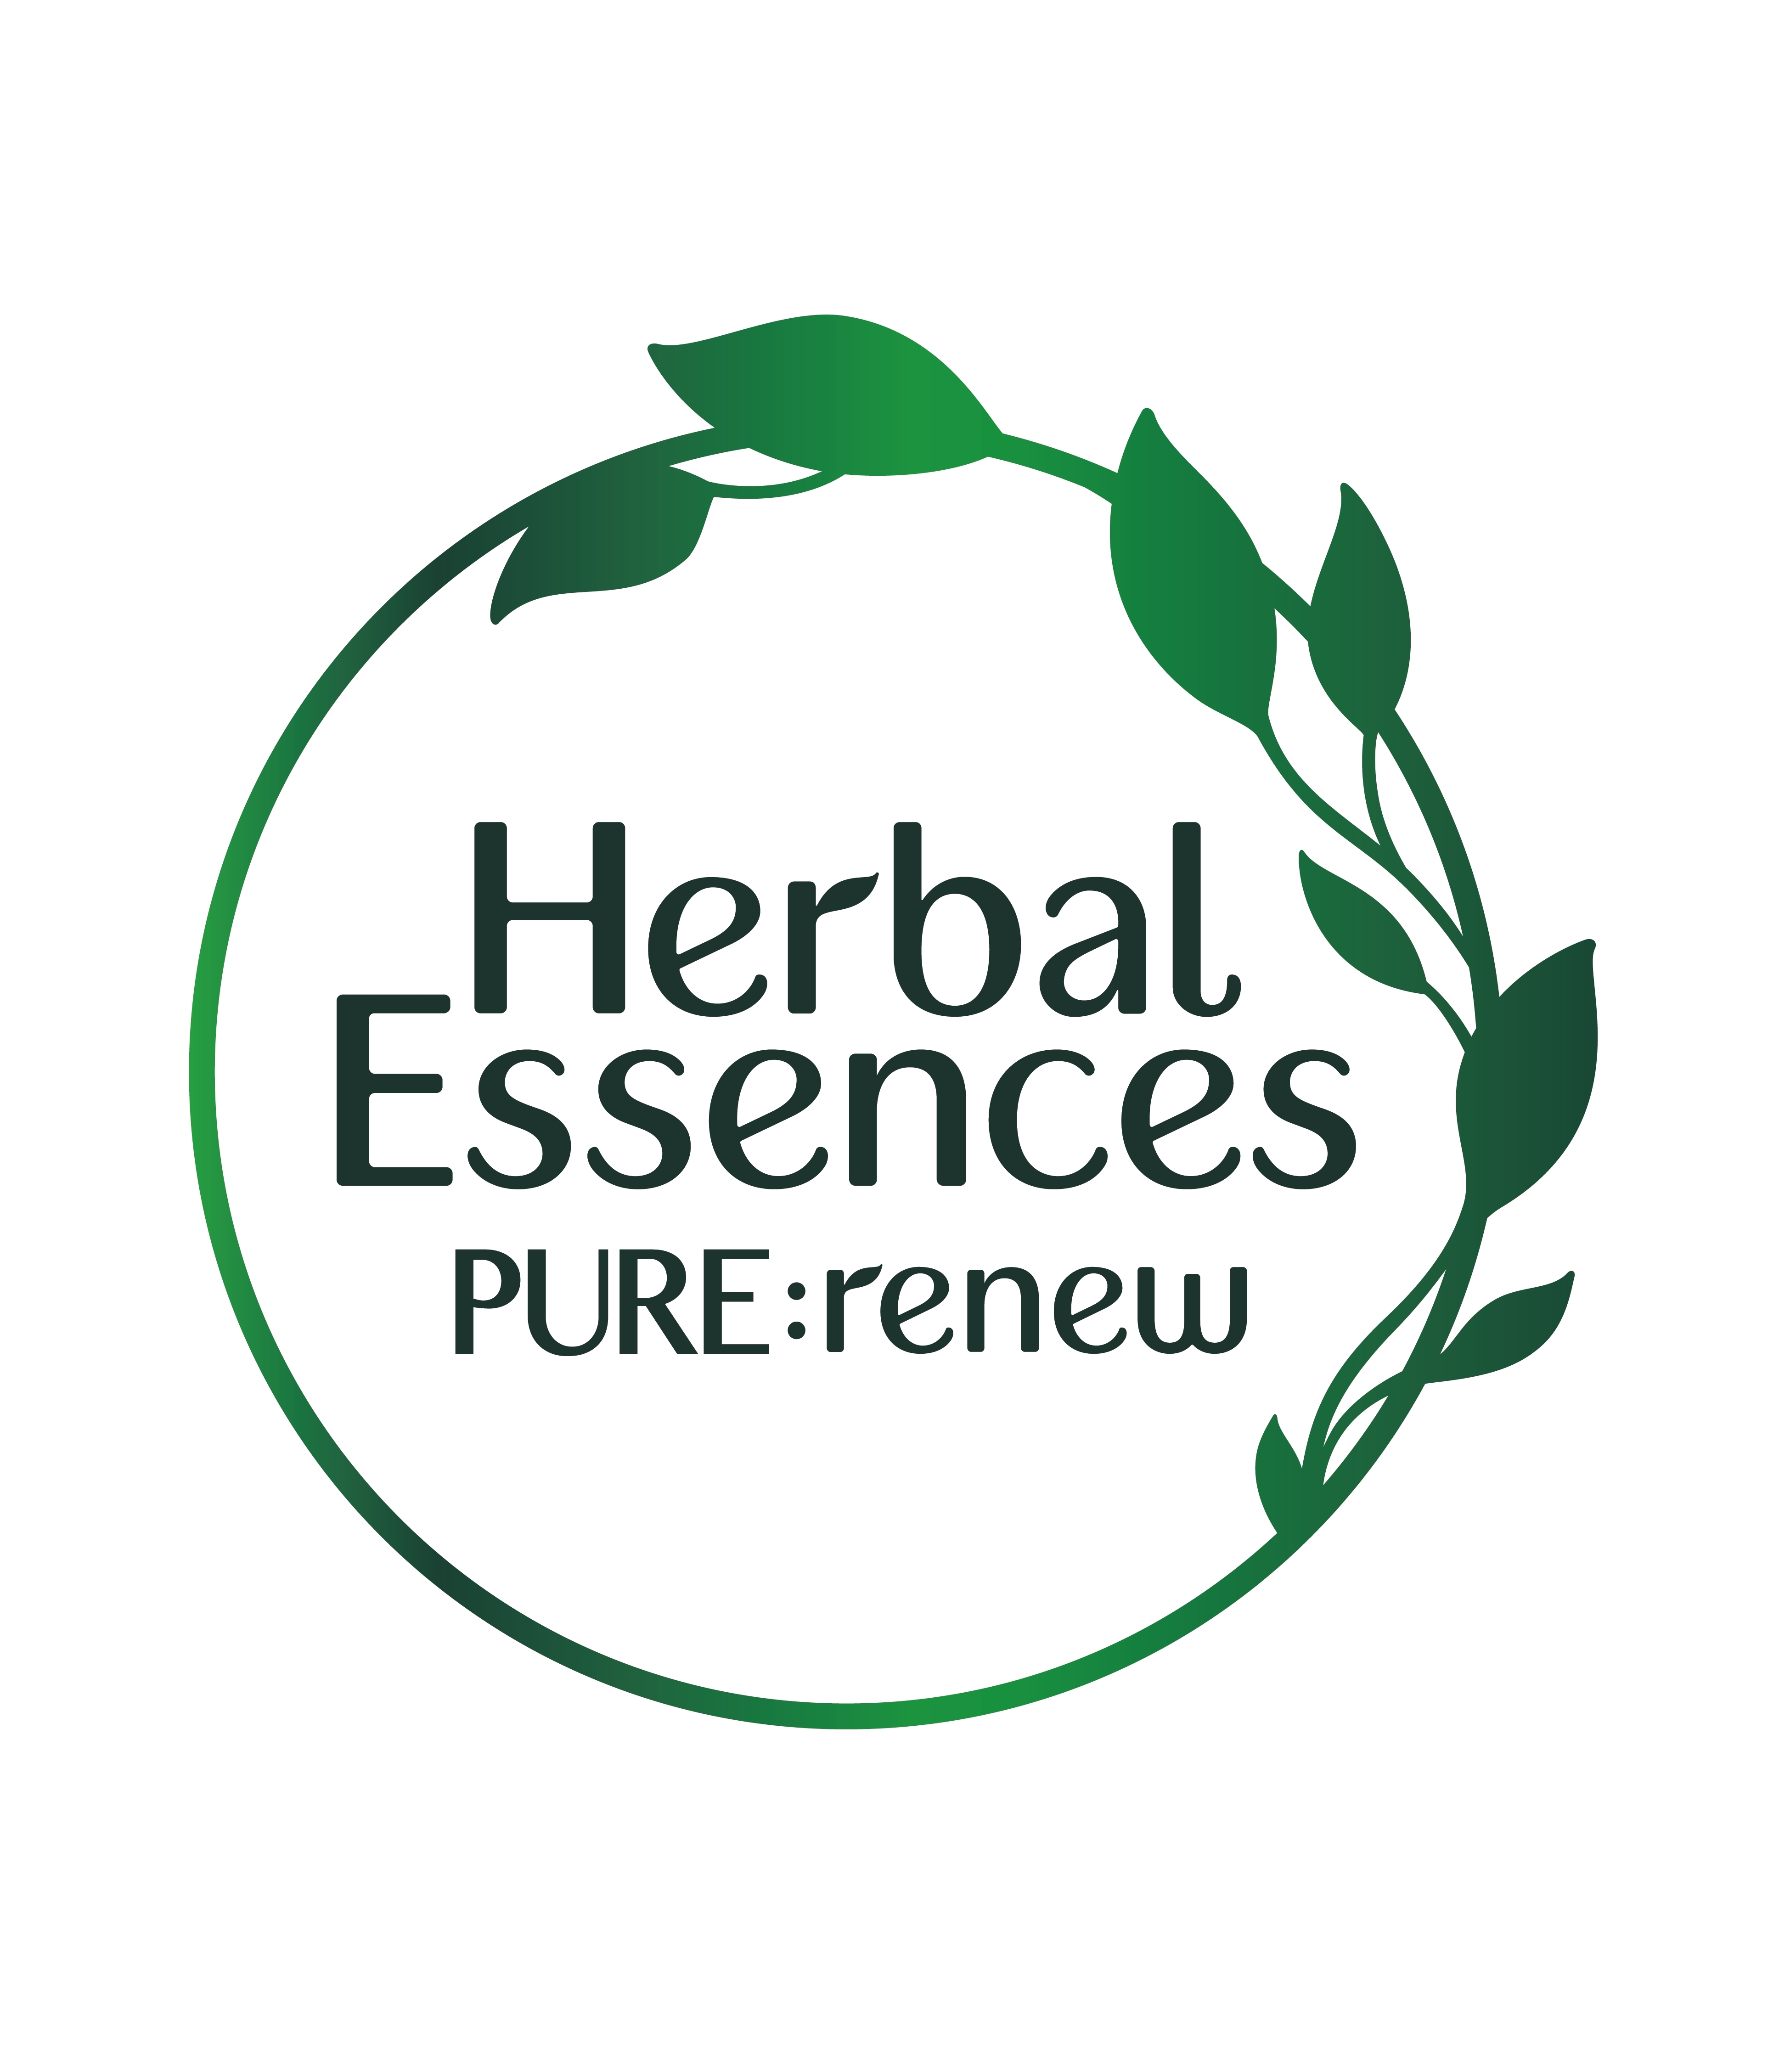 Эссенс состав. Essence логотип. Эсенсес логотип. Эссенция логотип. Торговый знак Herbal Essences.